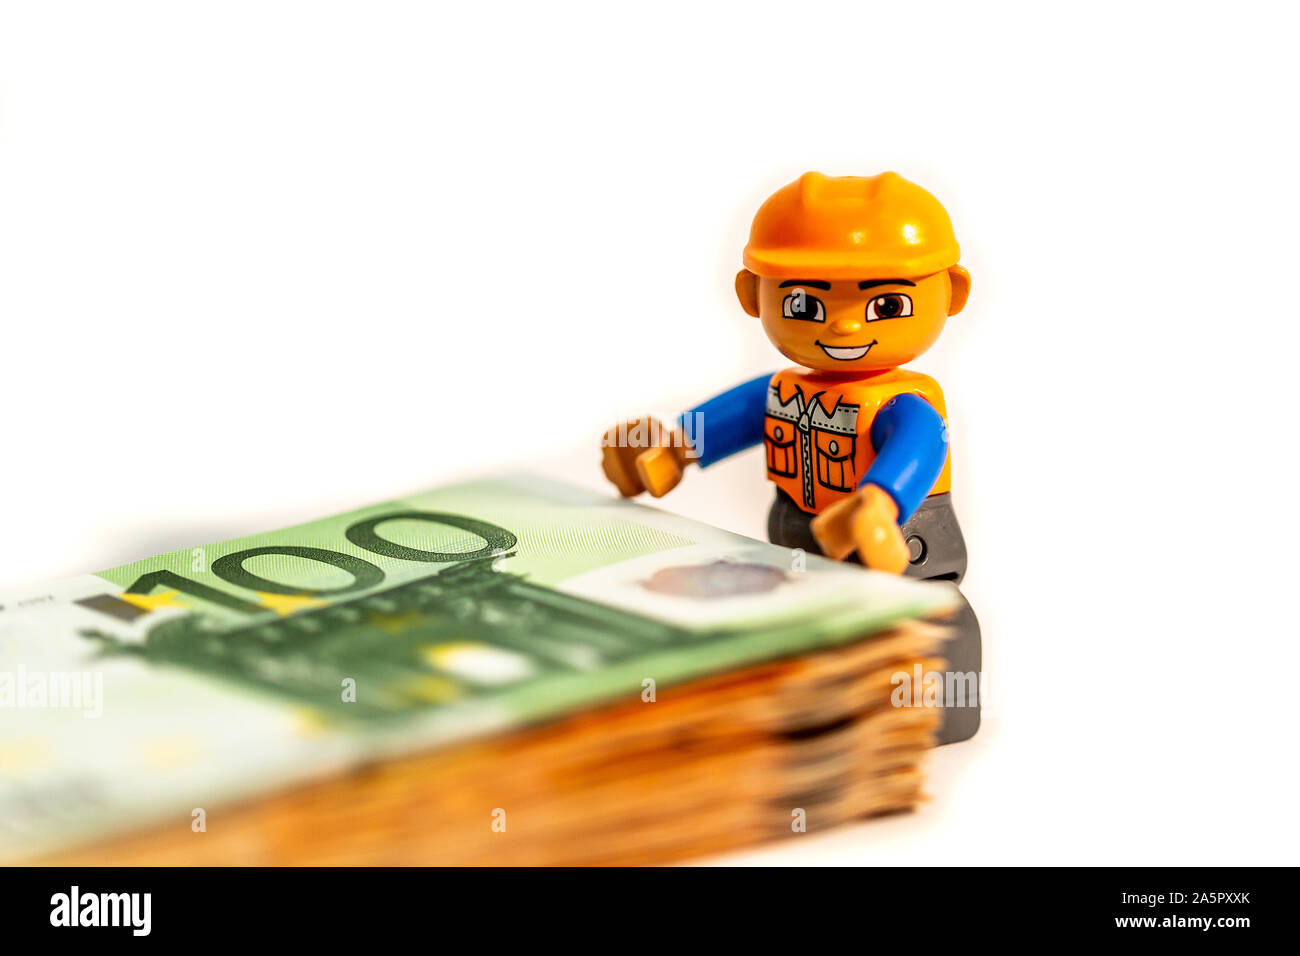 Legoland Spielzeug Arbeiter Modell stehen einer pilo von Euro-banknoten,  Geld. Lego Minifiguren sind von der Lego Gruppe hergestellt Stockfotografie  - Alamy